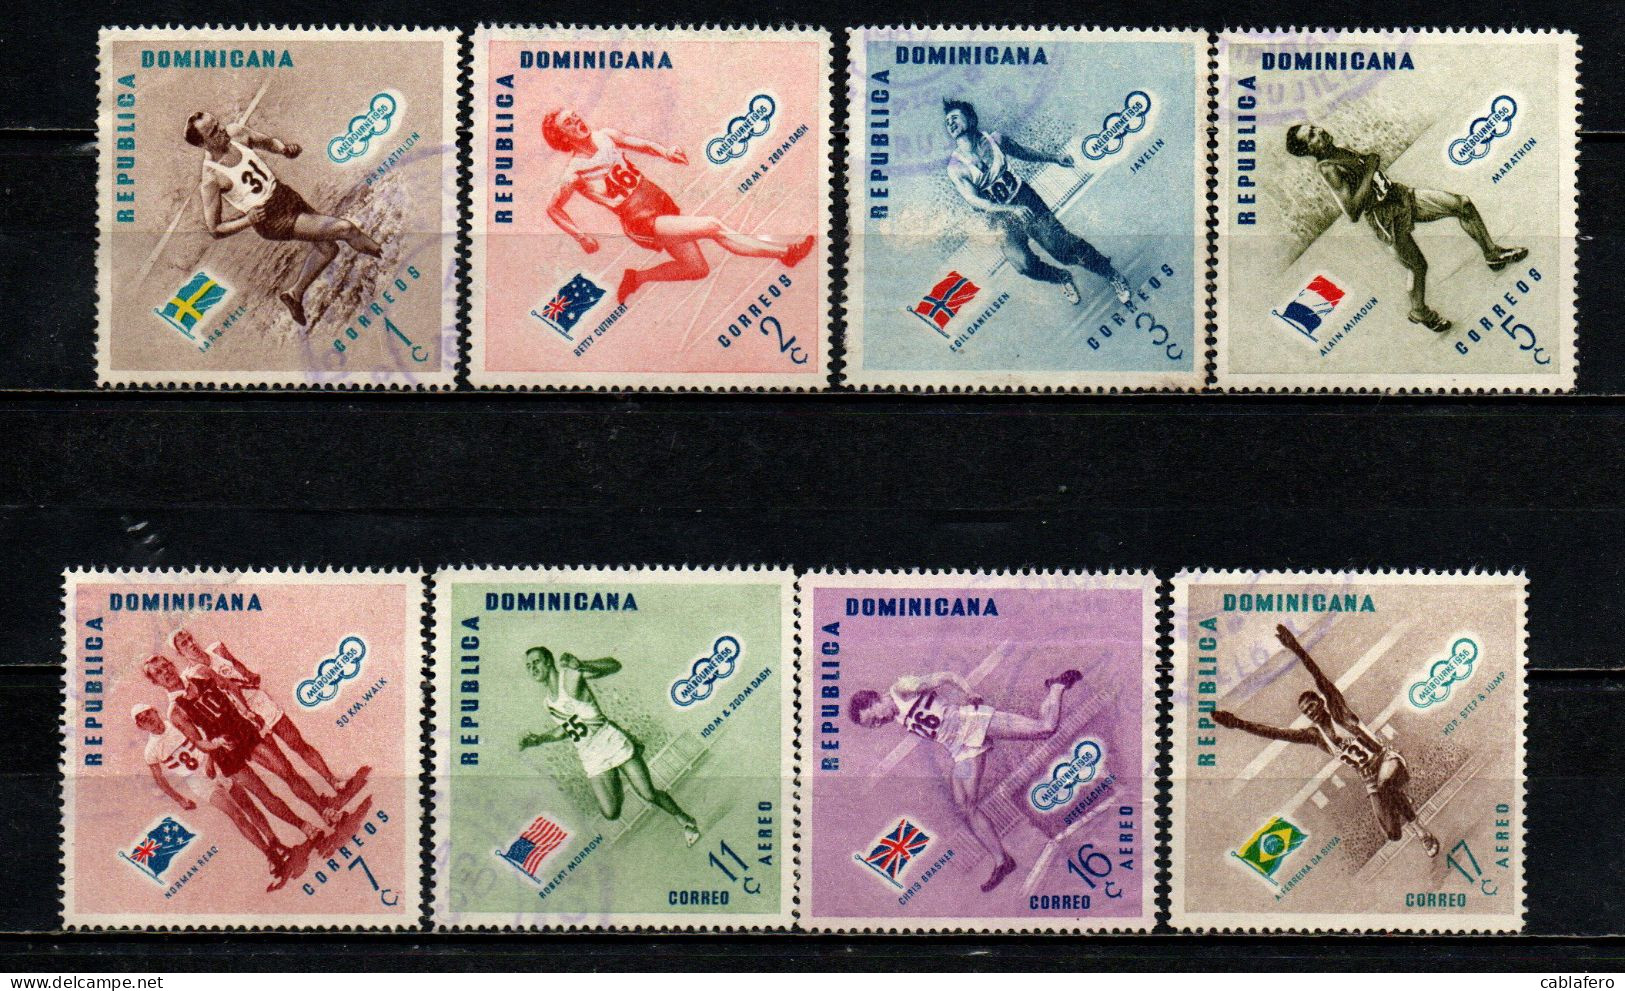 REPUBBLICA DOMENICANA - 1957 - VINCITORI DELLE MEDAGLIE OLIMPICHE DI MELBOURNE - USATI - Dominican Republic